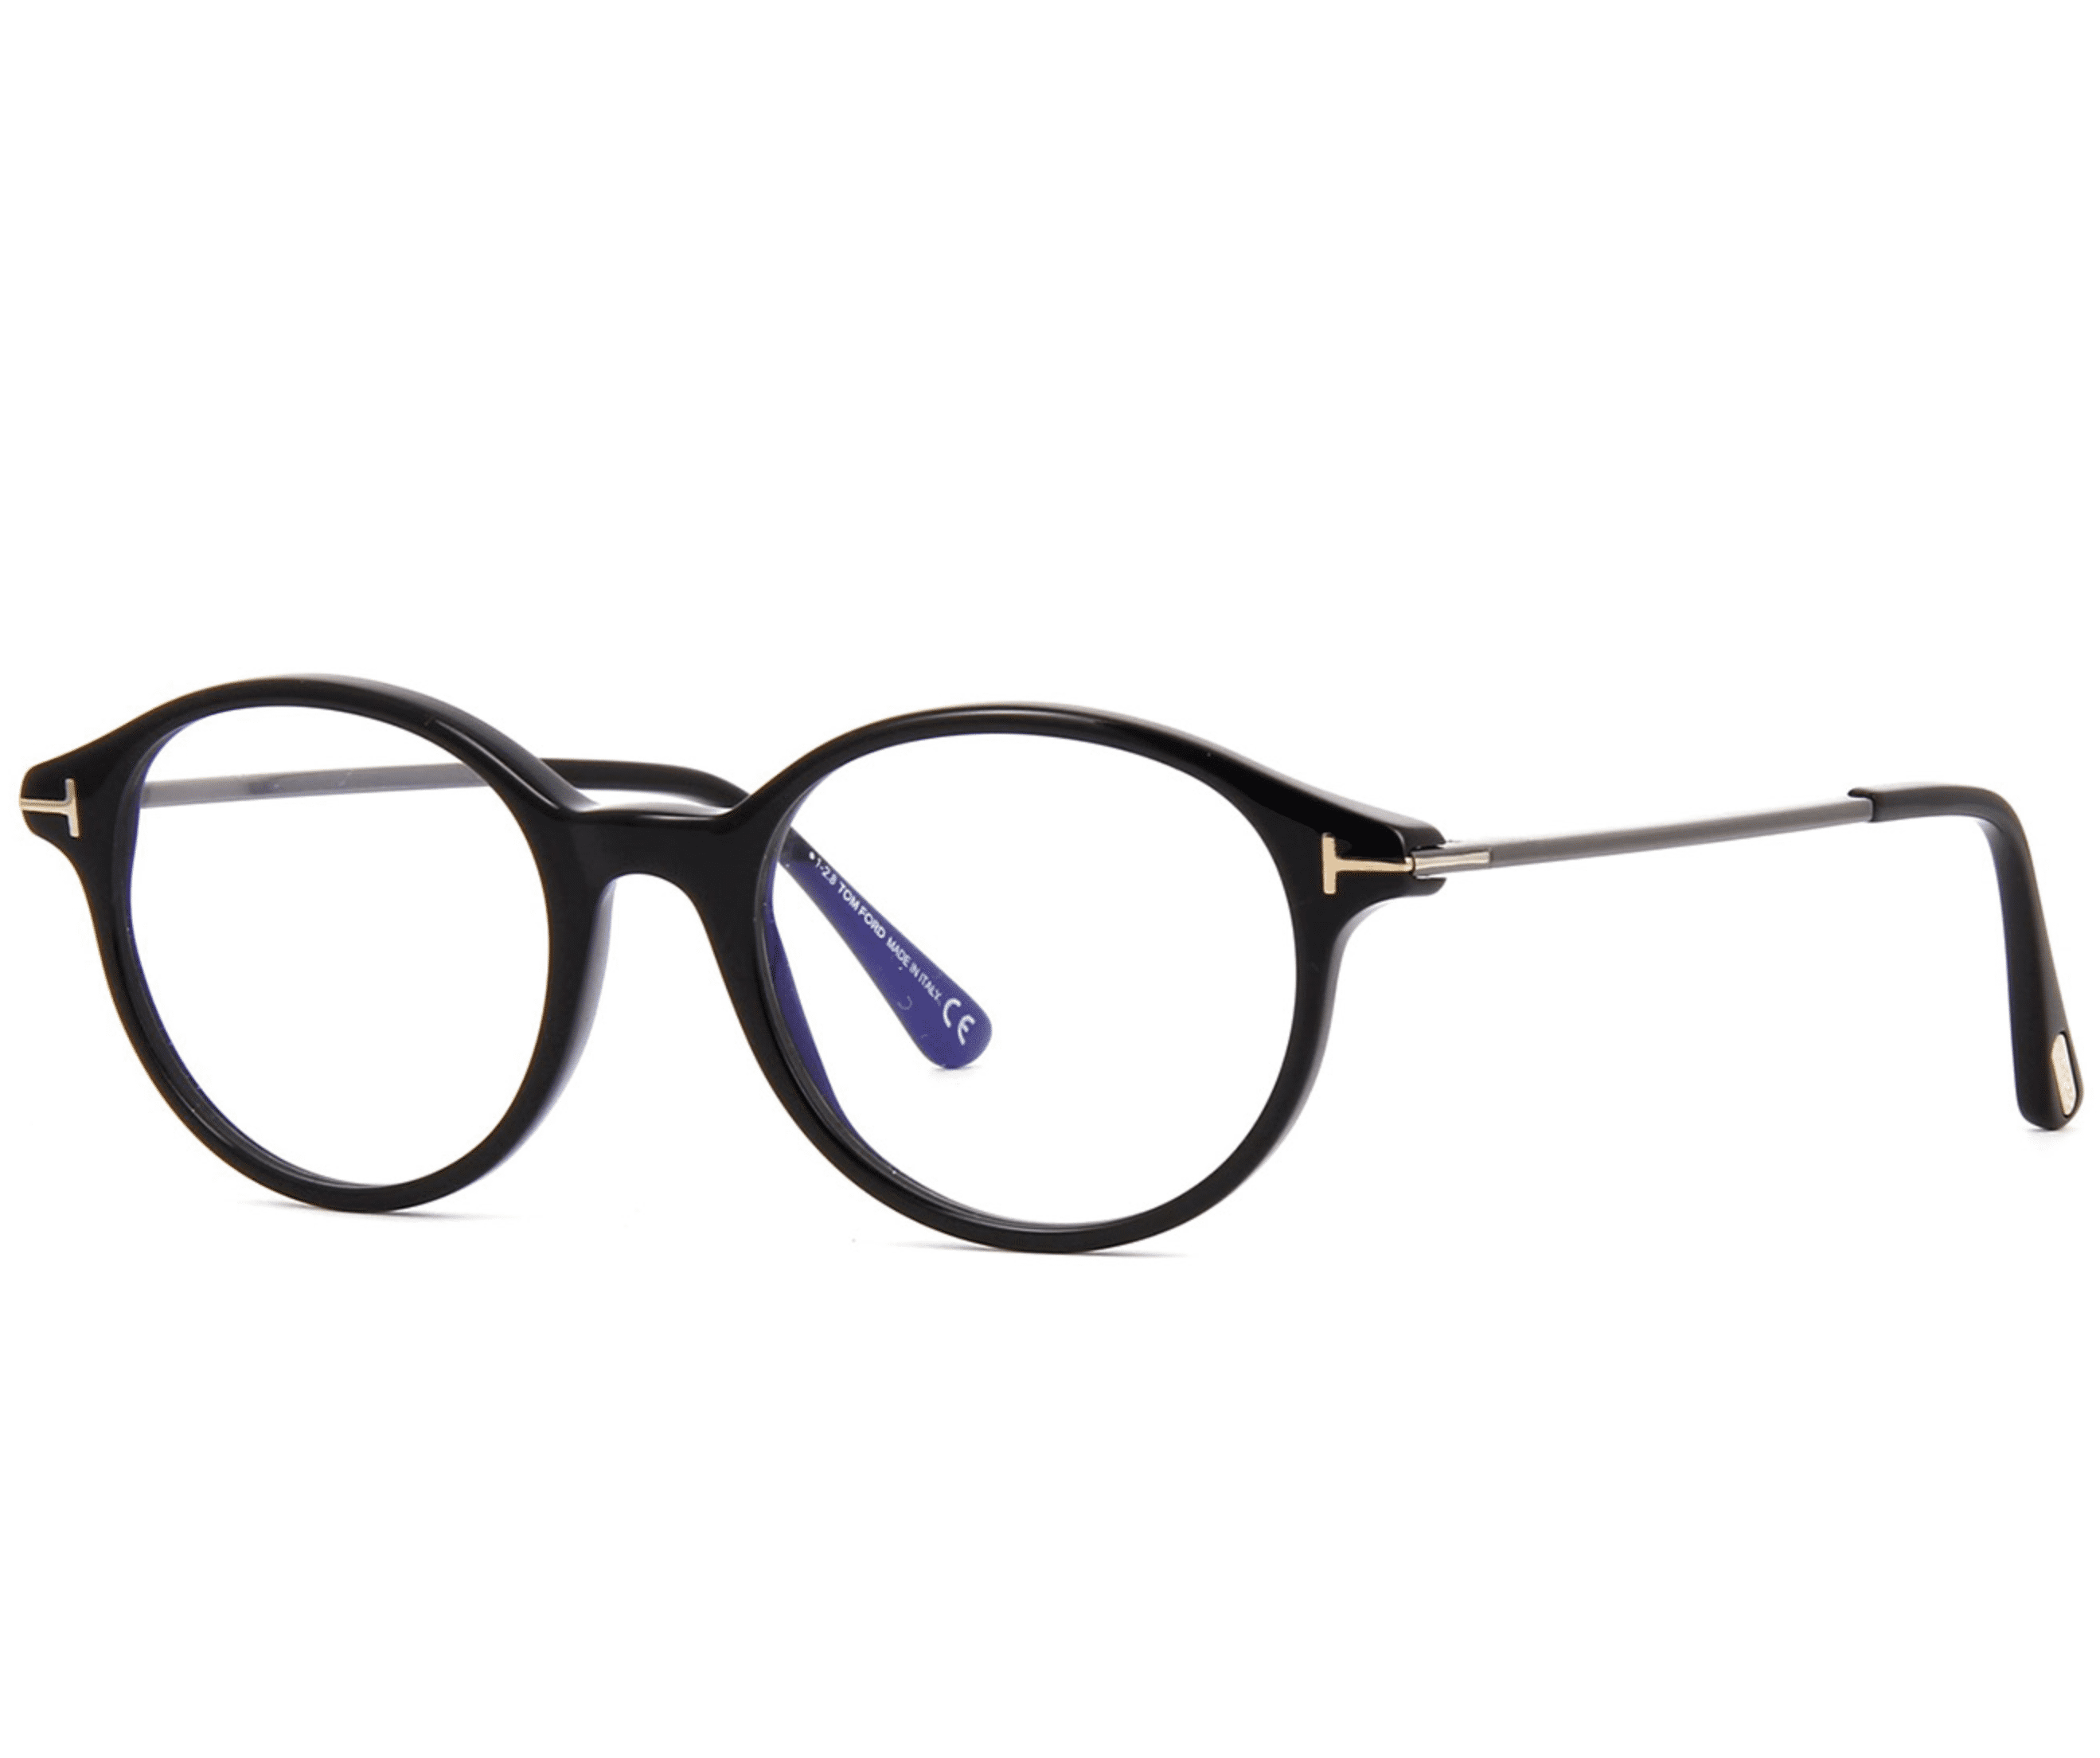 Tom Ford Ft5554 B 001 Eyeglasses Black Frame 48mm Blue Block Collection Walmart Com Walmart Com